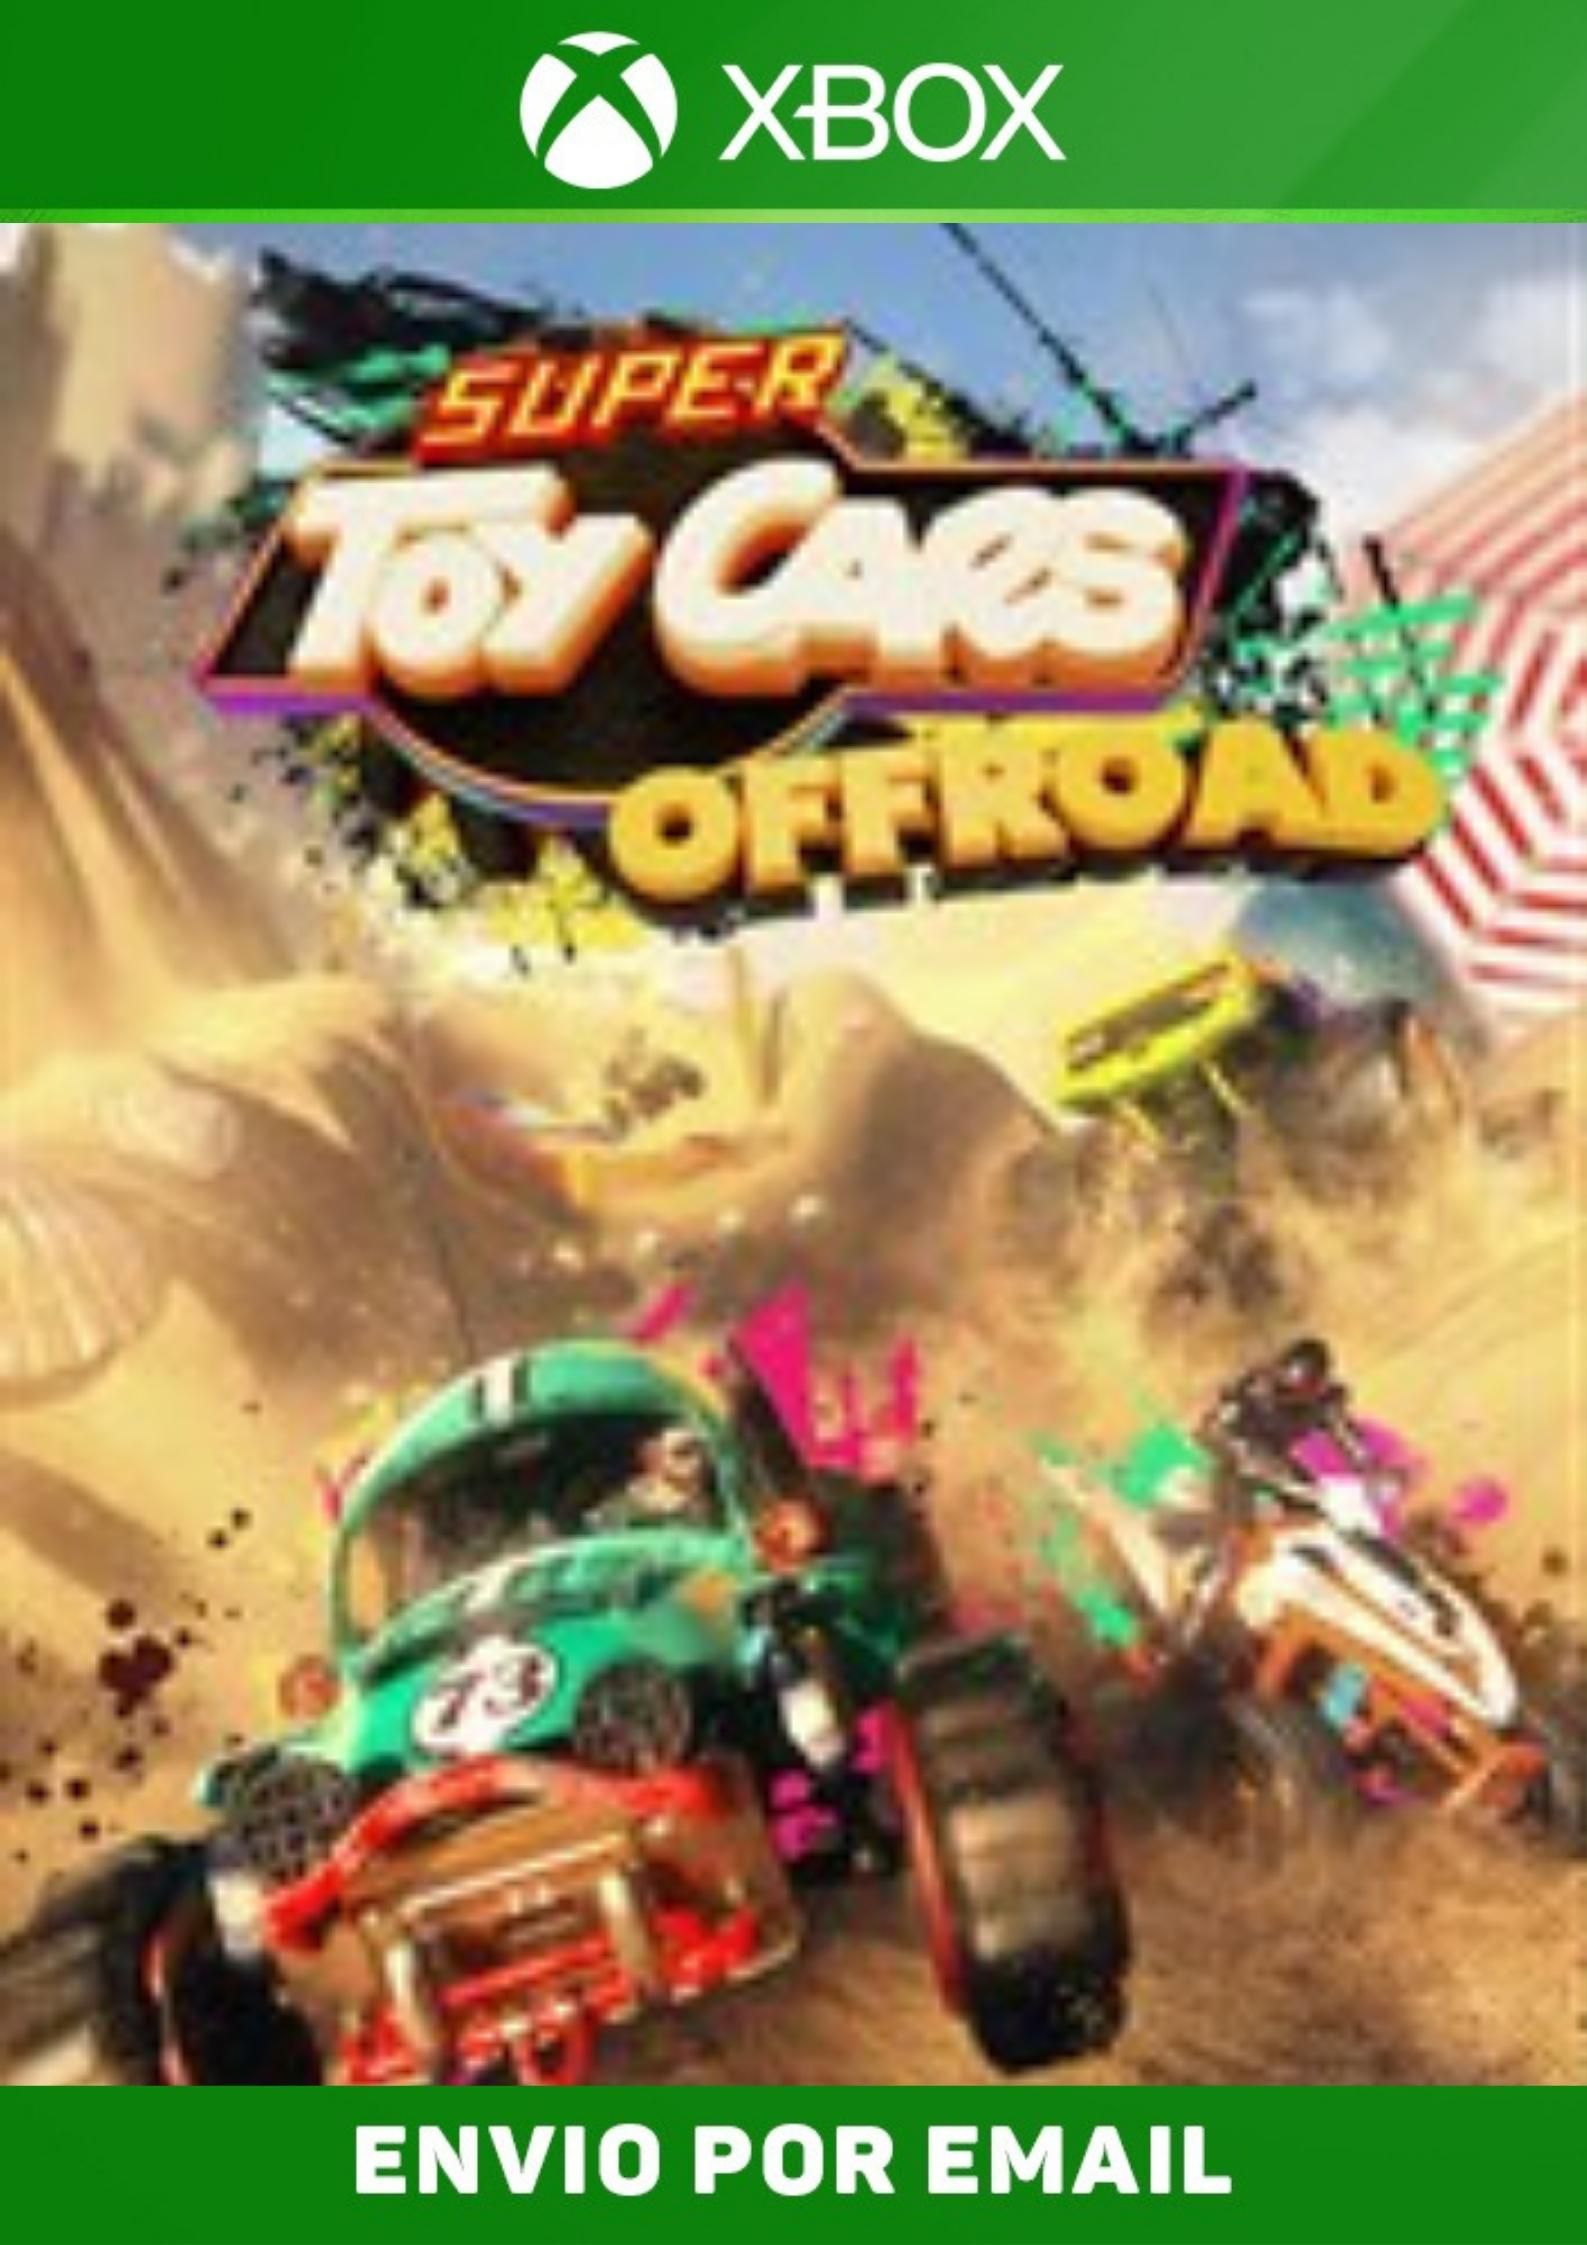 Carros 2 The Video Games - Jogo Original em Mida Digital Xbox 360